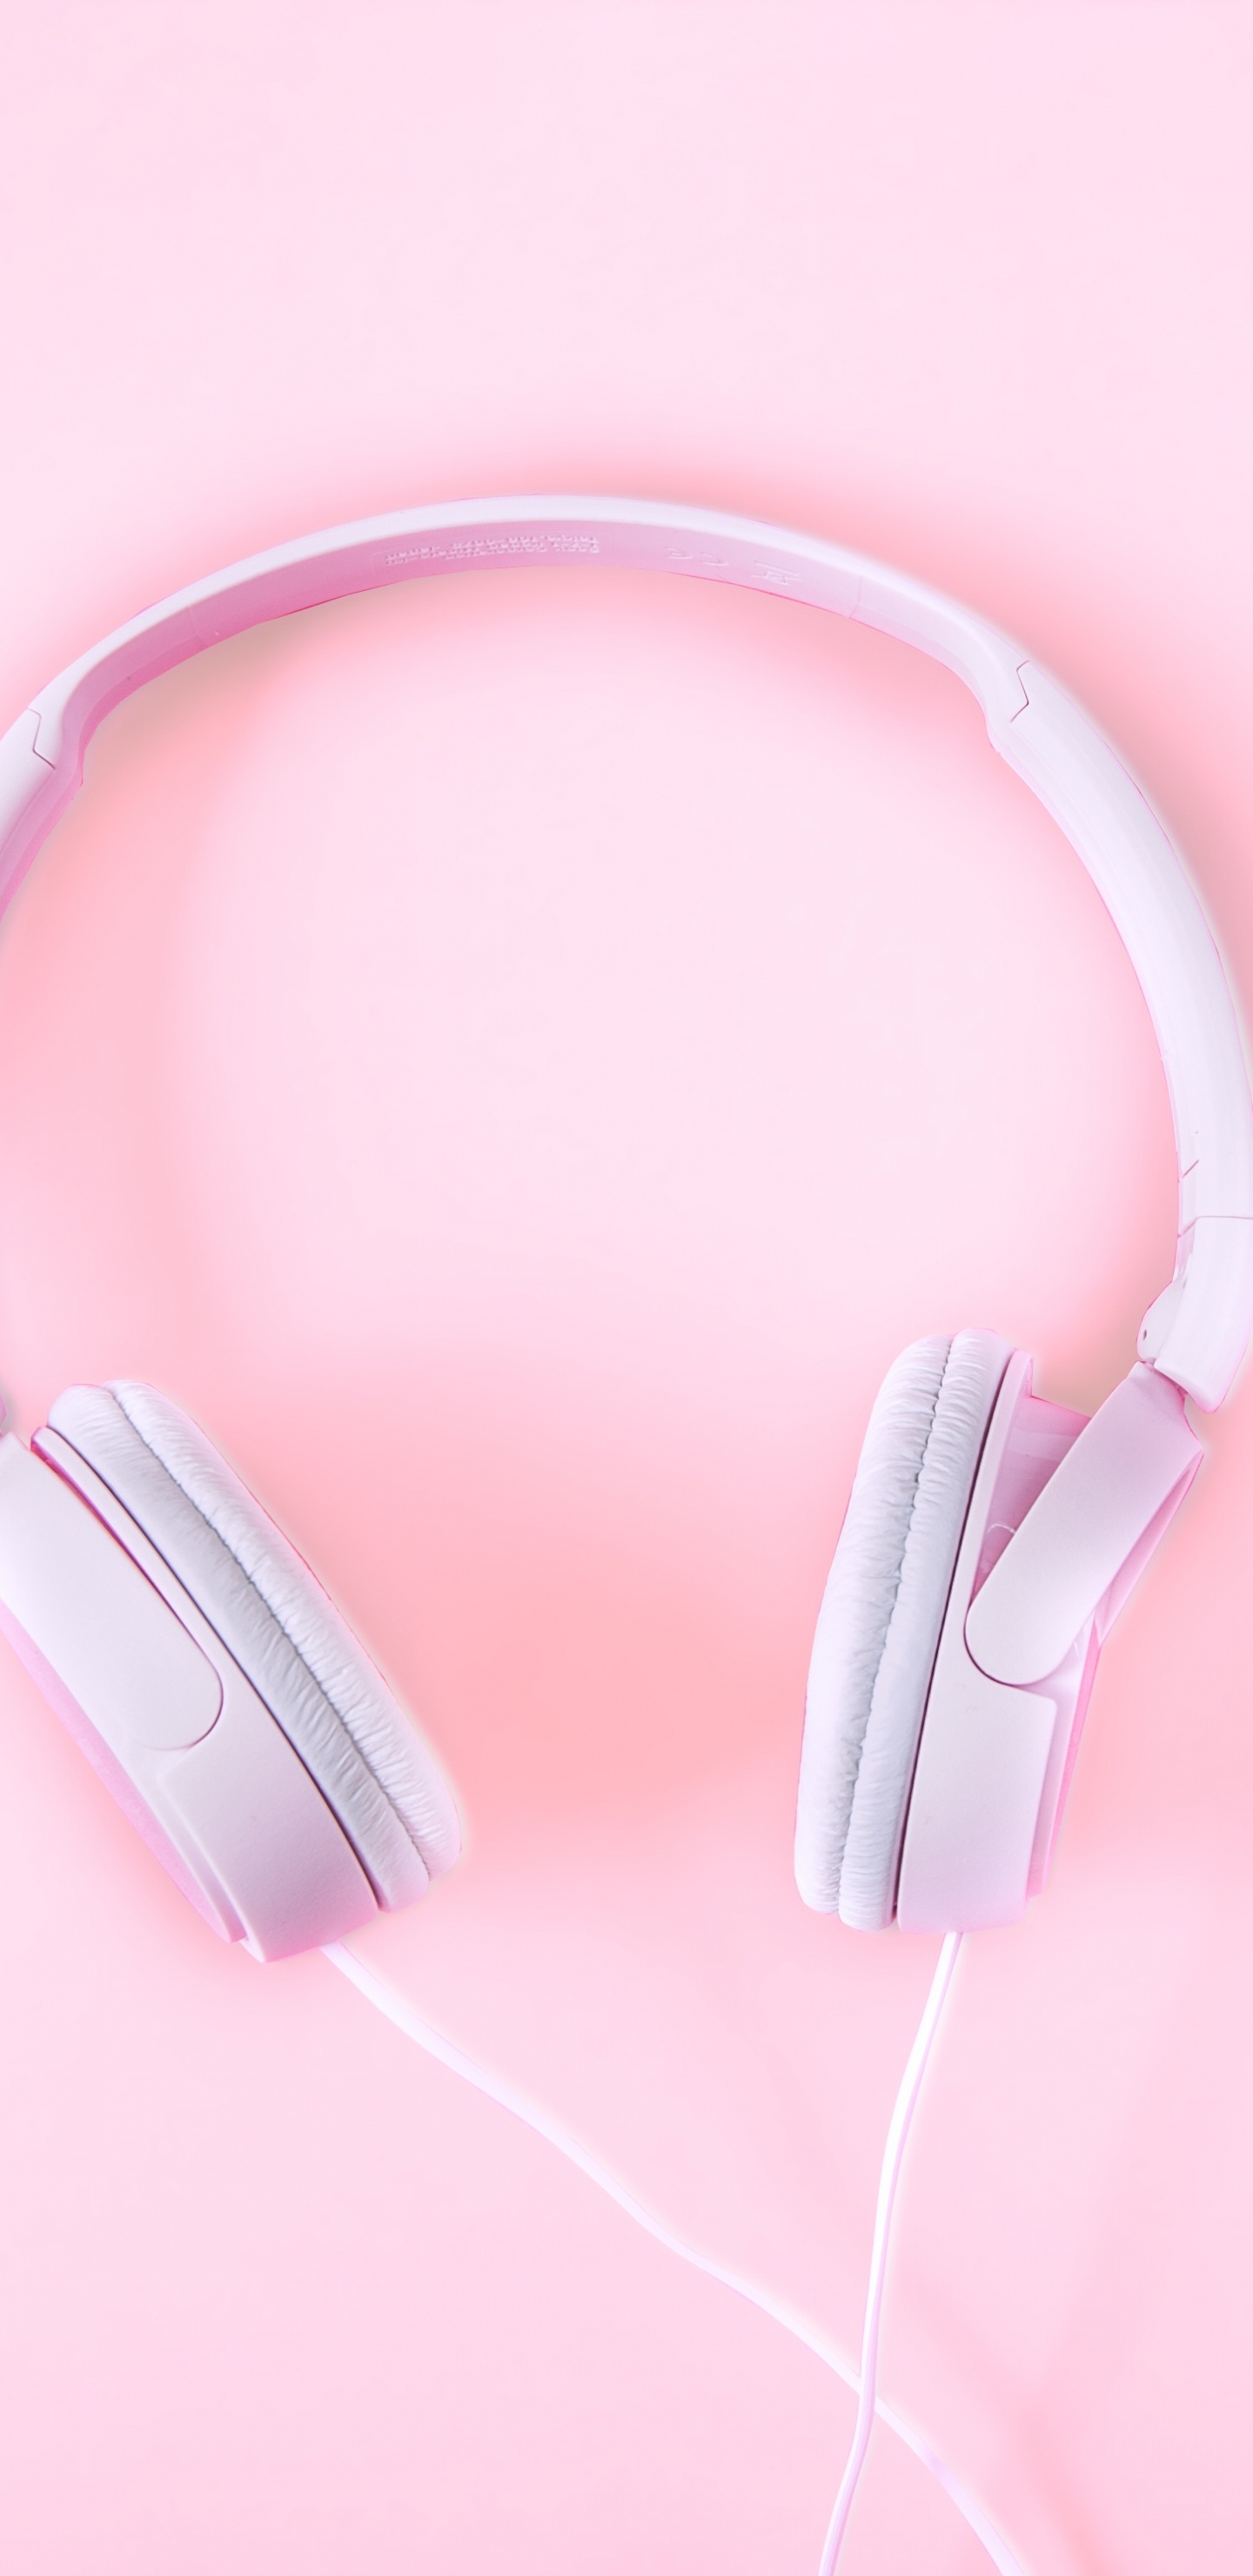 粉红色, 音频设备, 小工具, 耳朵, 电子设备 壁纸 1440x2960 允许